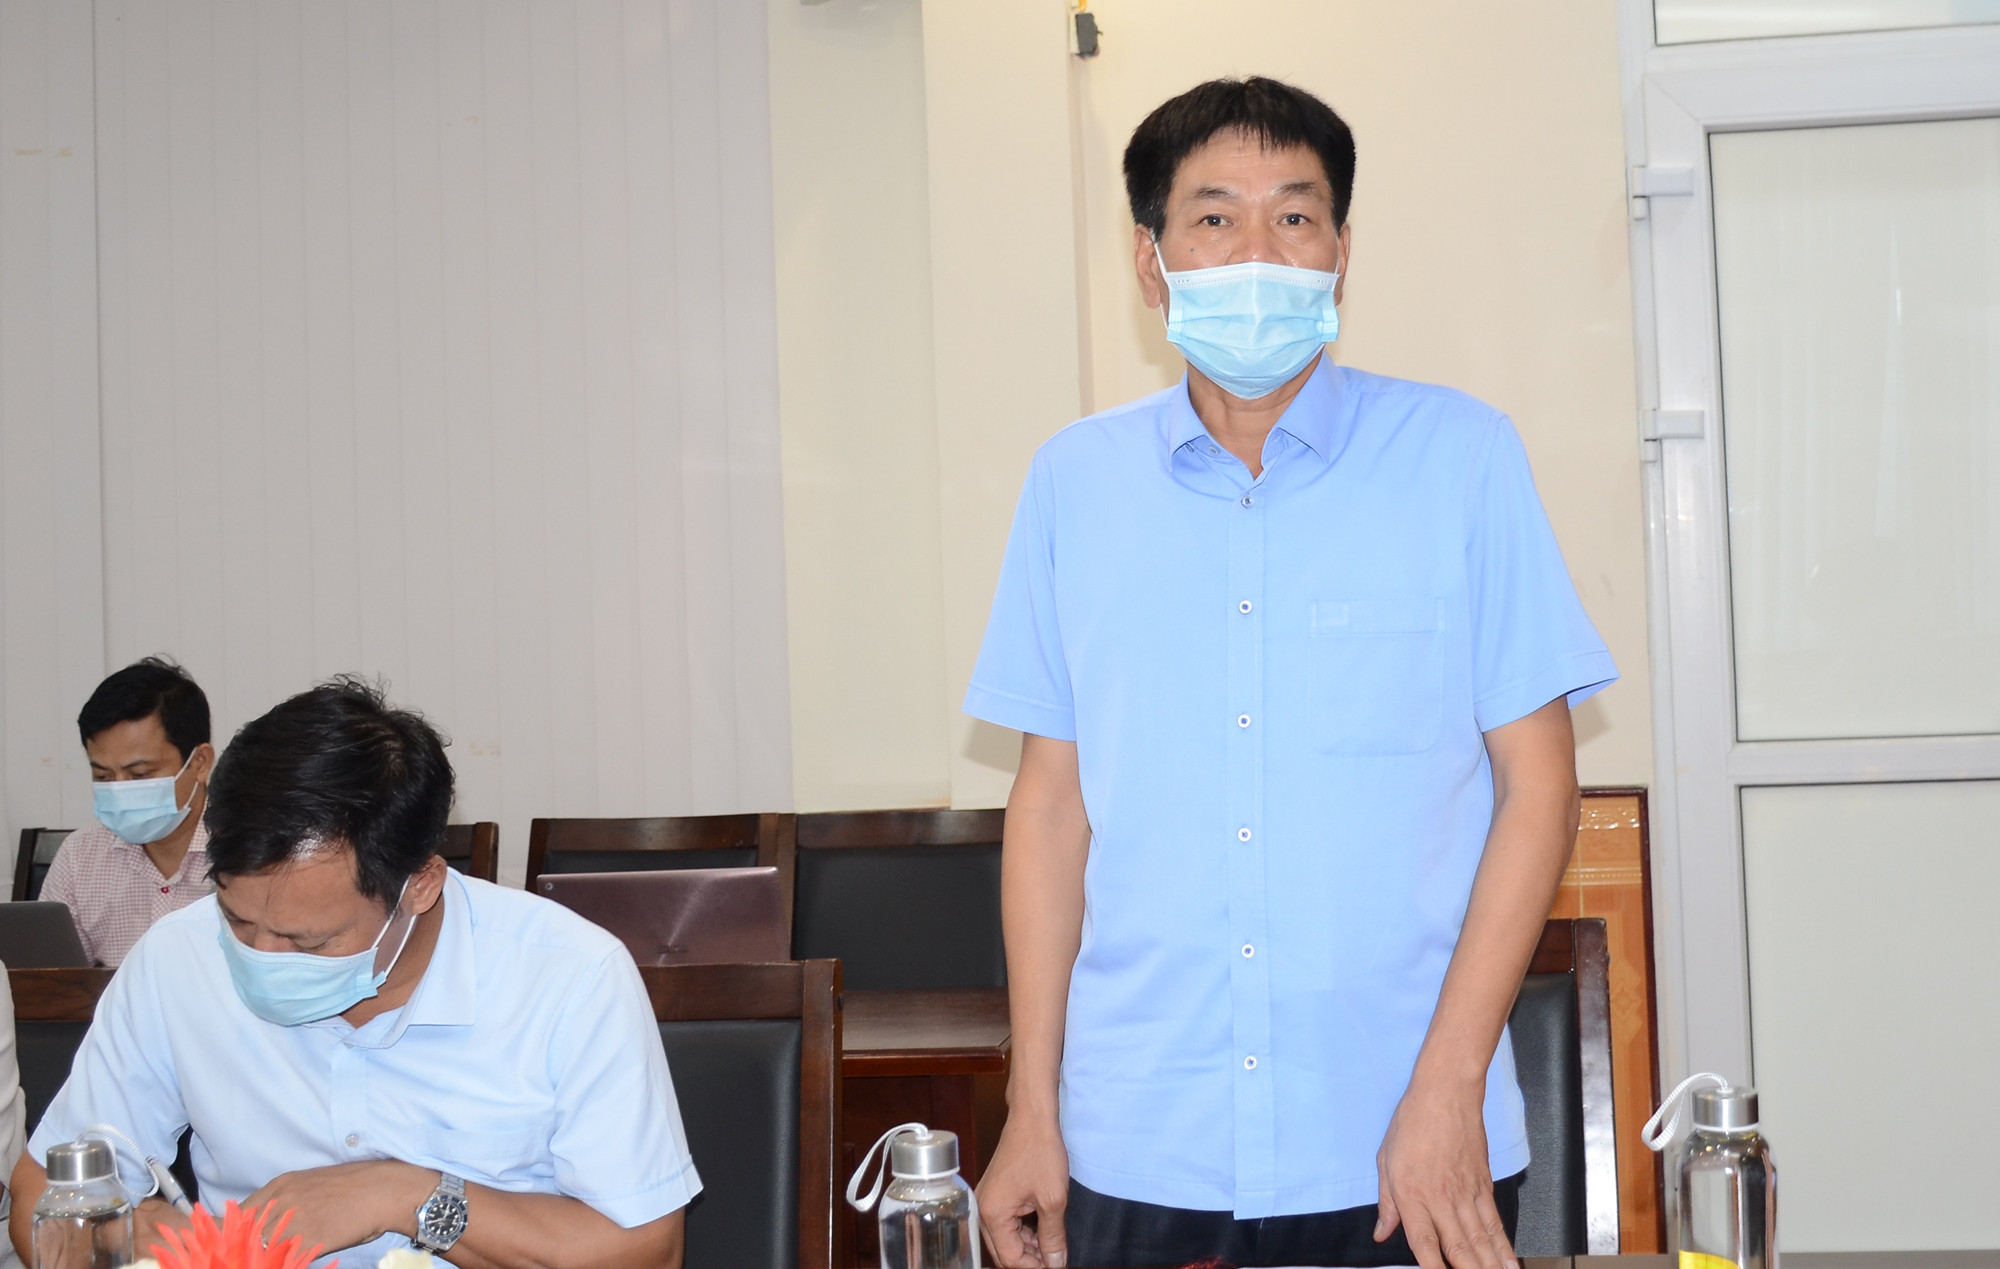 Đồng chí Tăng Xuân Luyện, Chủ tịch UBND huyện Diễn Châu Châu báo cáo kết quả điều tra, truy vết. Ảnh: Thành Chung